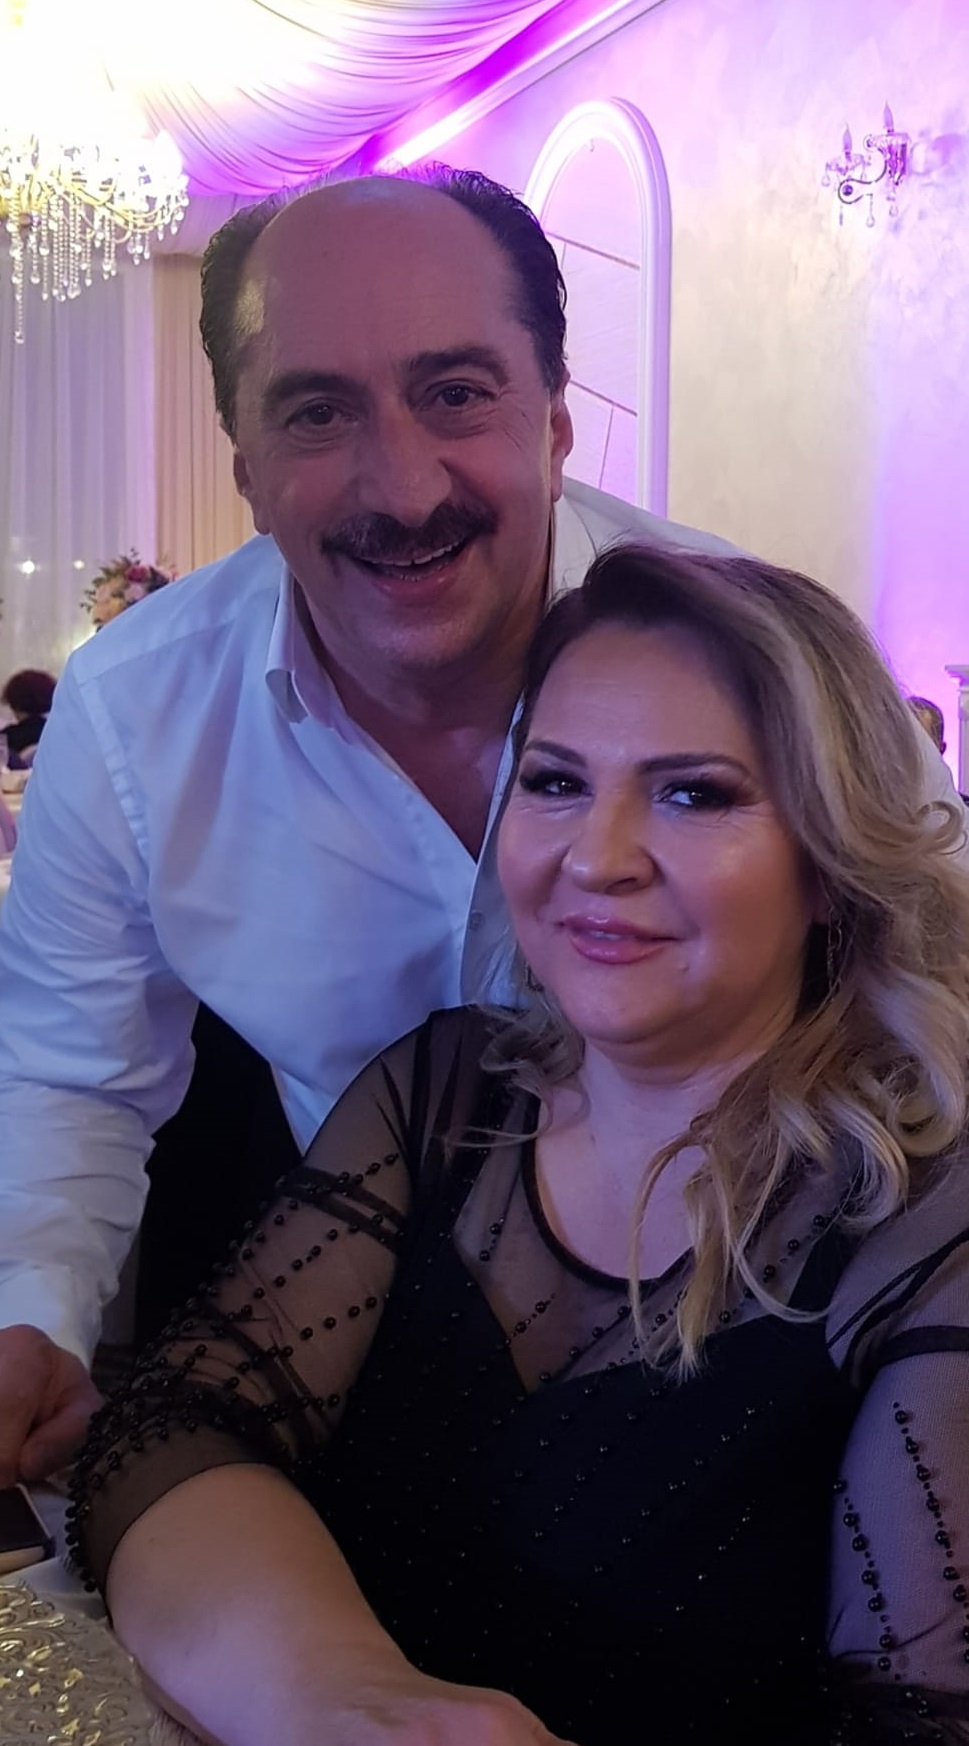 Romică Țociu în seara de Revelion alături de soția lui, Nicoleta Țociu, amândoi îmbrăcați elegant